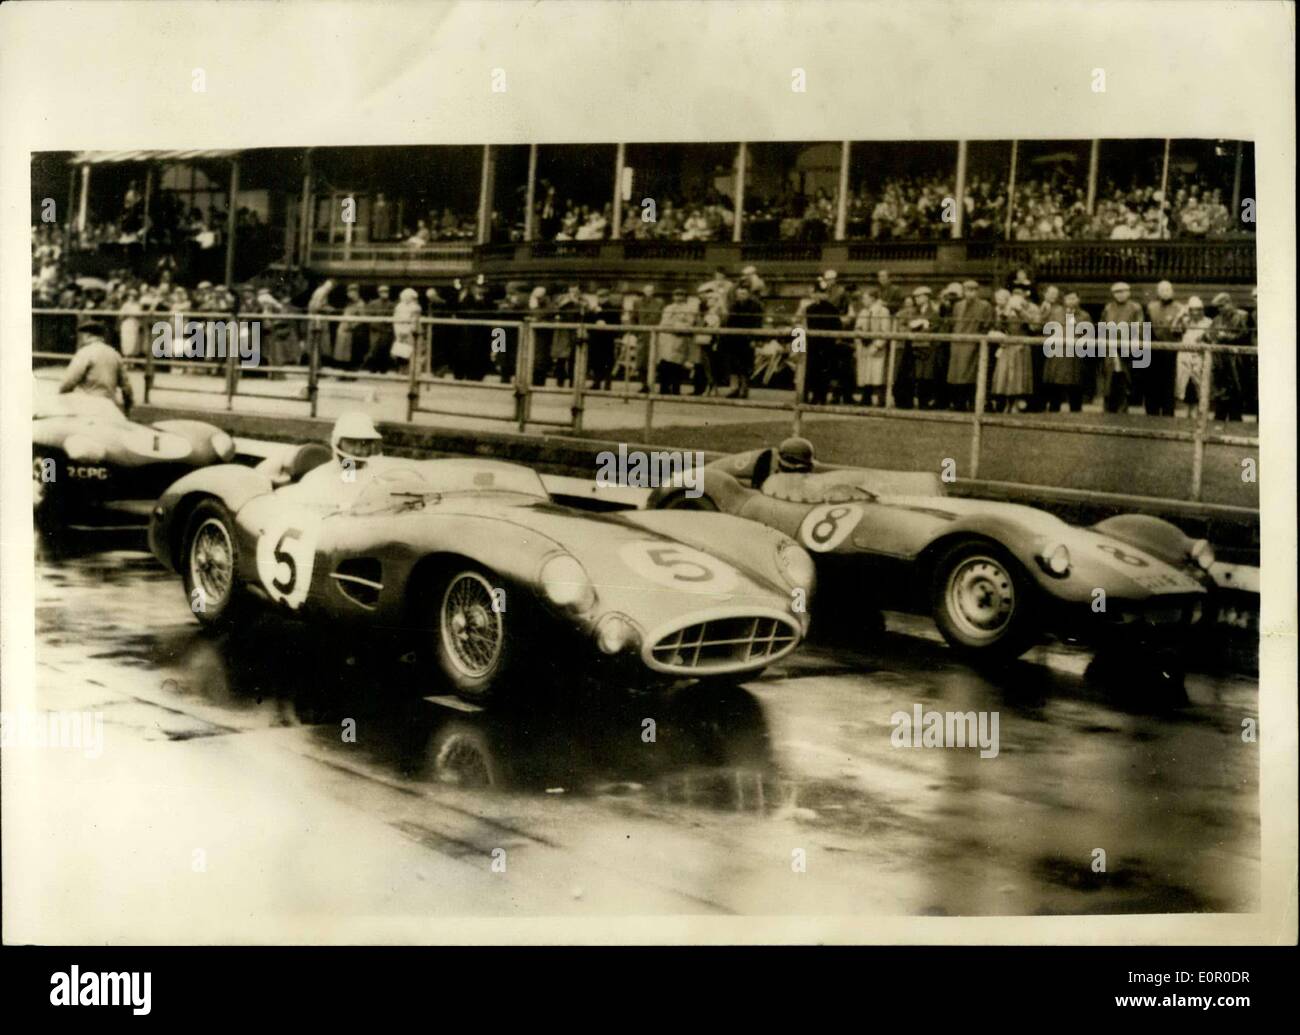 Jul 20, 1957 - Grand Prix Británico y Europeo en Aintree: La fotografía  muestra la escena en el inicio de la carrera de scratch para automóviles  deportivos mostrando Archie Scott Brown en